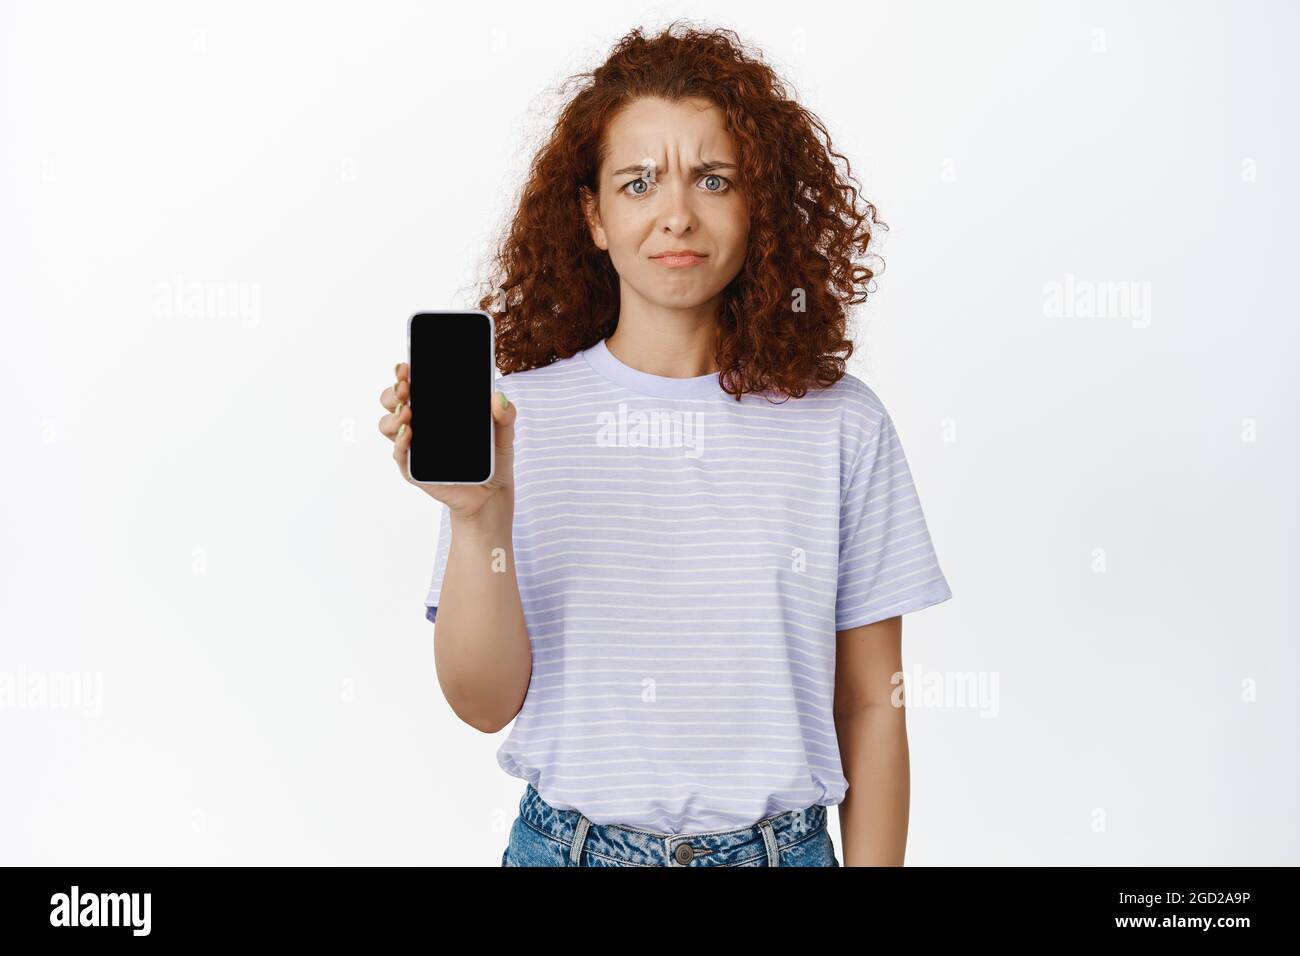 Immagine di giovane donna che mostra lo schermo del telefono cellulare con scettica, deluso espressione del volto, lamentando l'applicazione, sfondo bianco Foto Stock